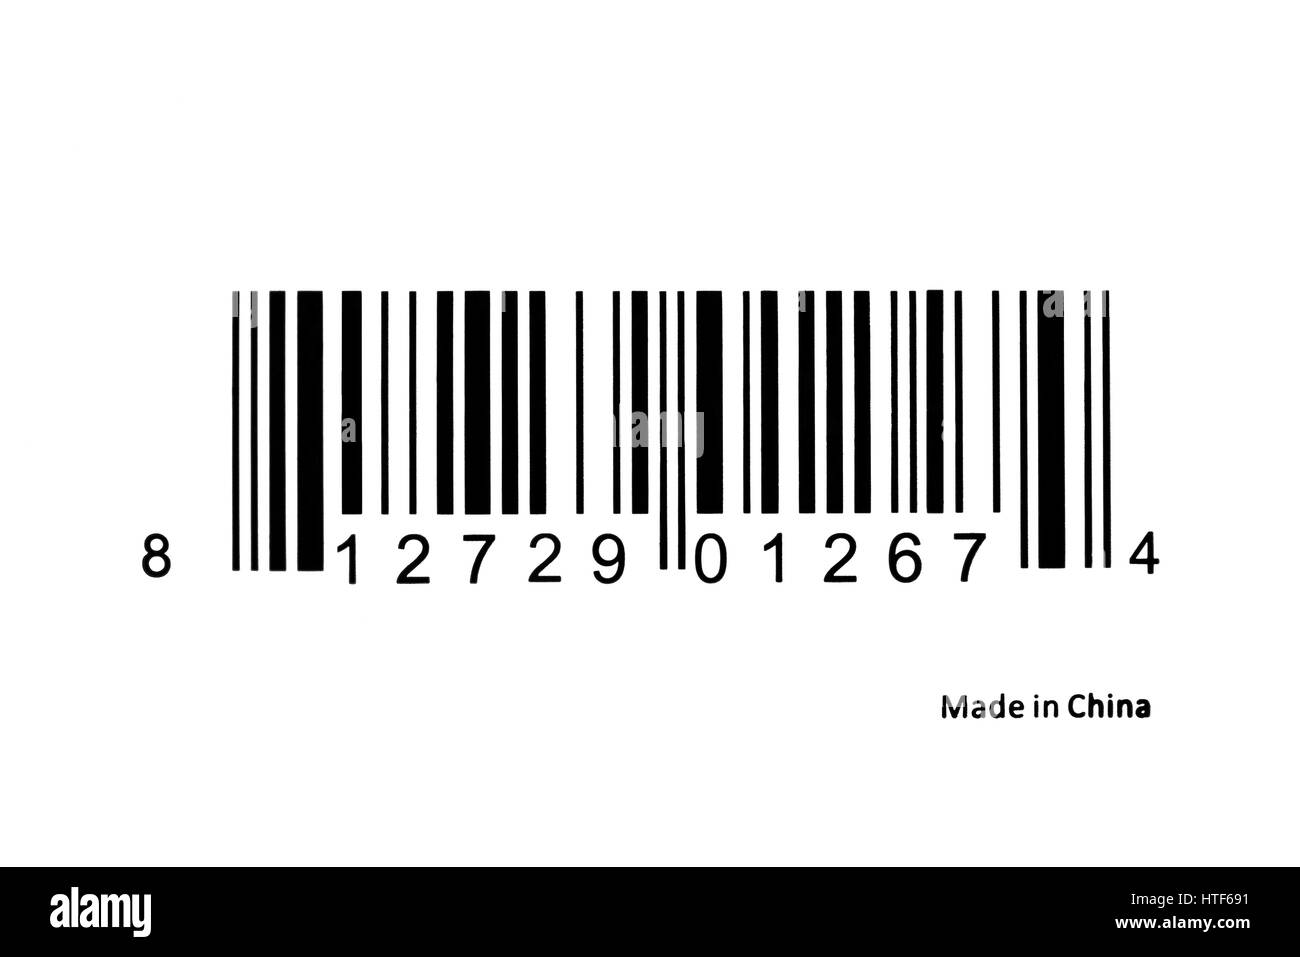 Barcode-Etiketten zur Identifizierung mit Made in China Text verwendet Stockfoto